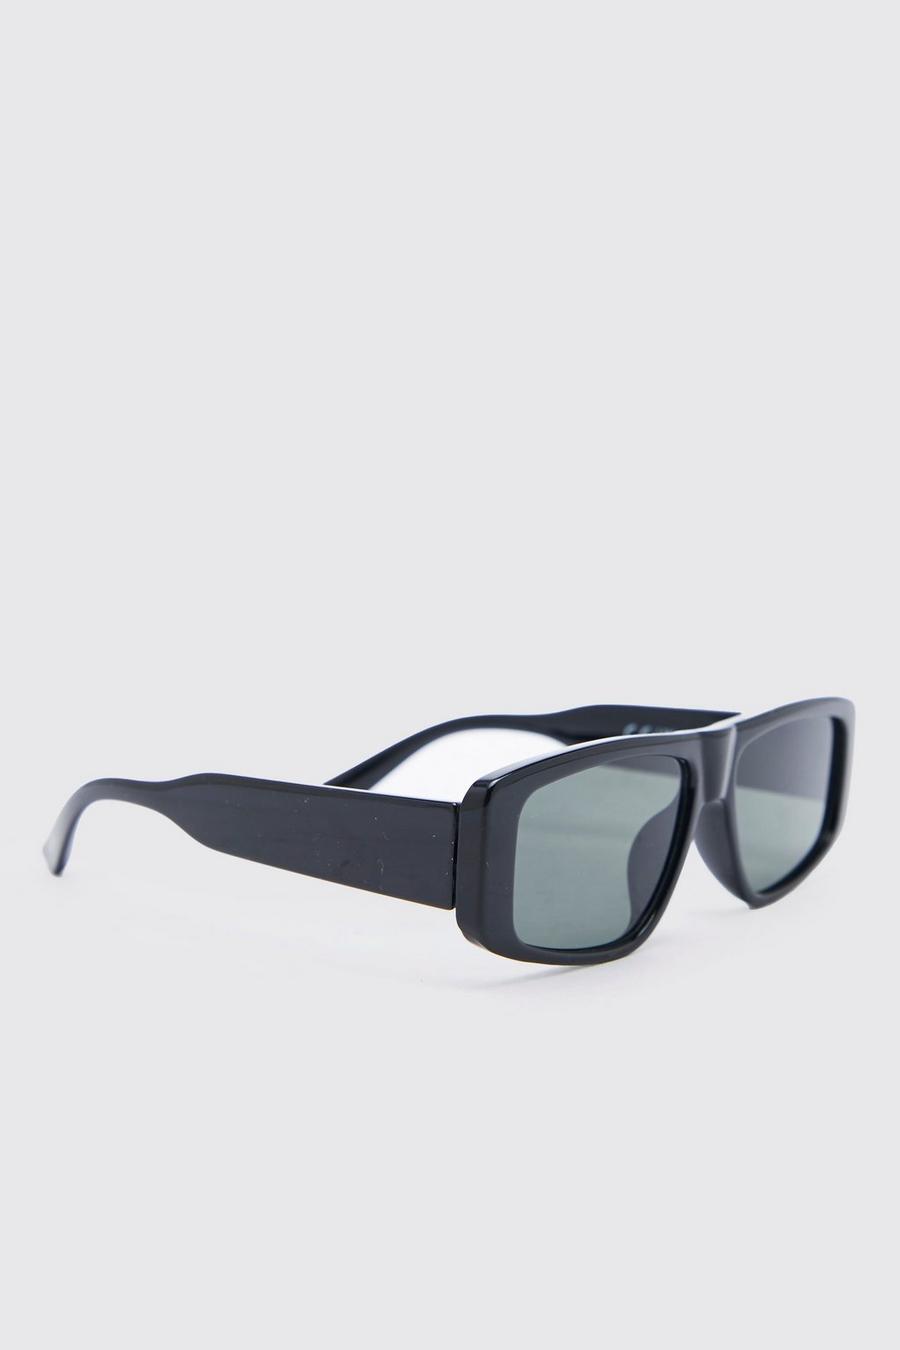 Gafas de sol recicladas rectangulares planas, Black nero